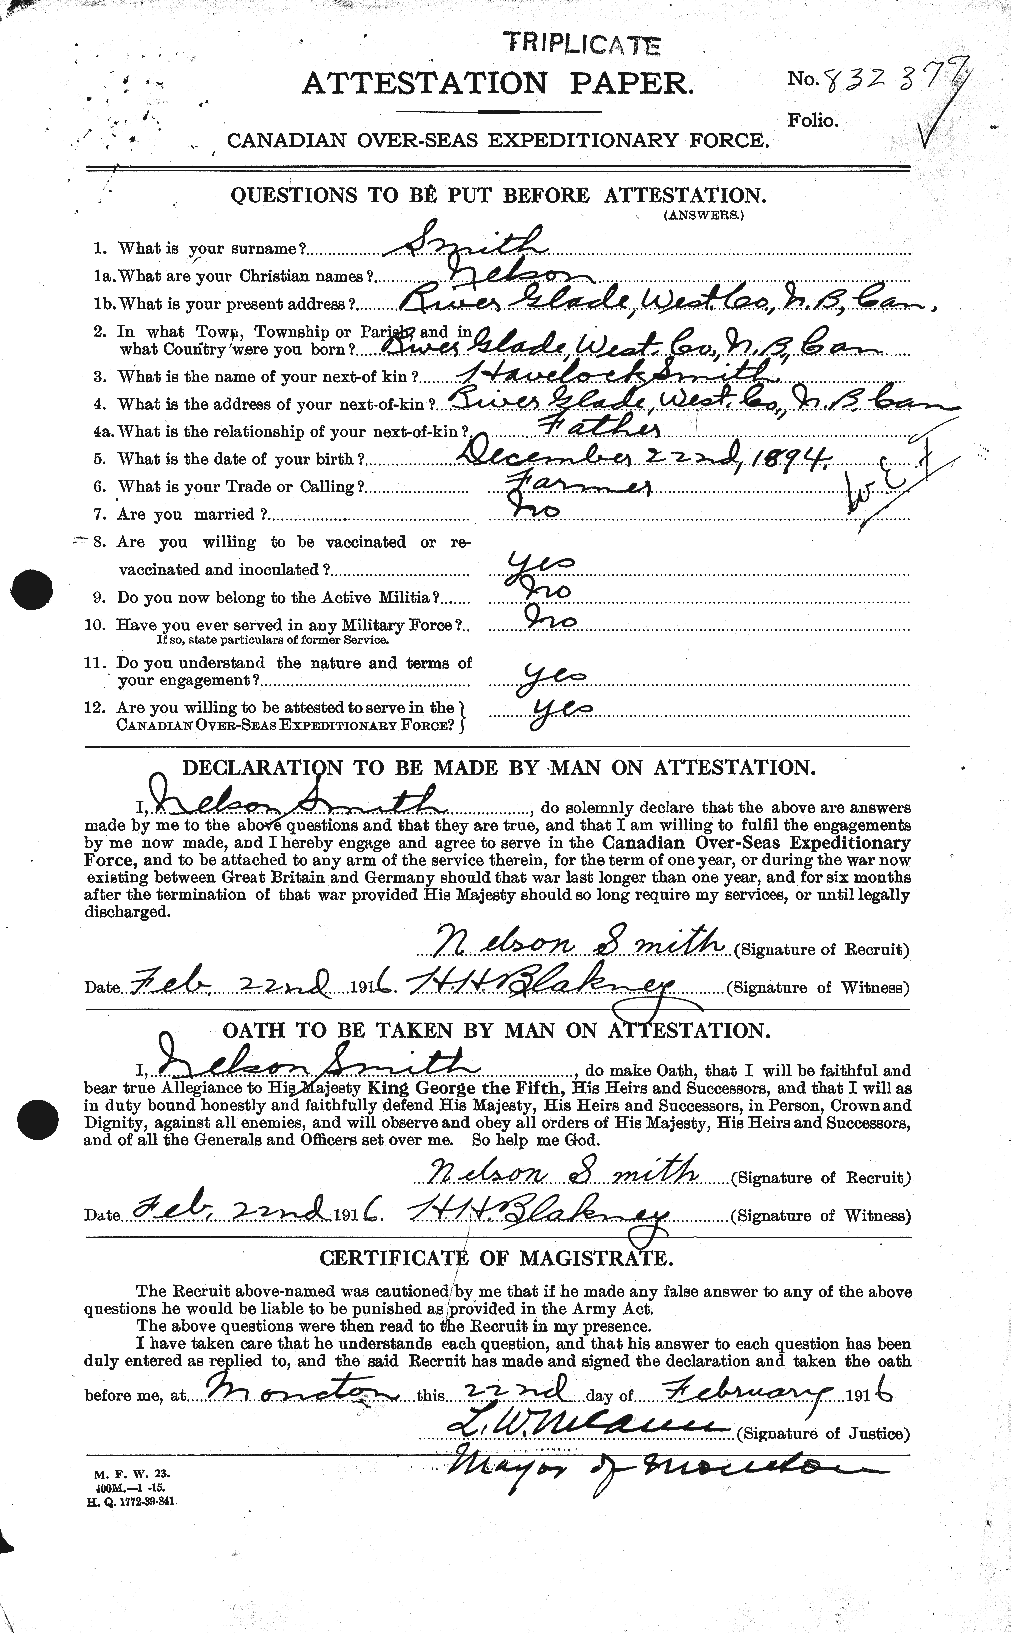 Dossiers du Personnel de la Première Guerre mondiale - CEC 104172a